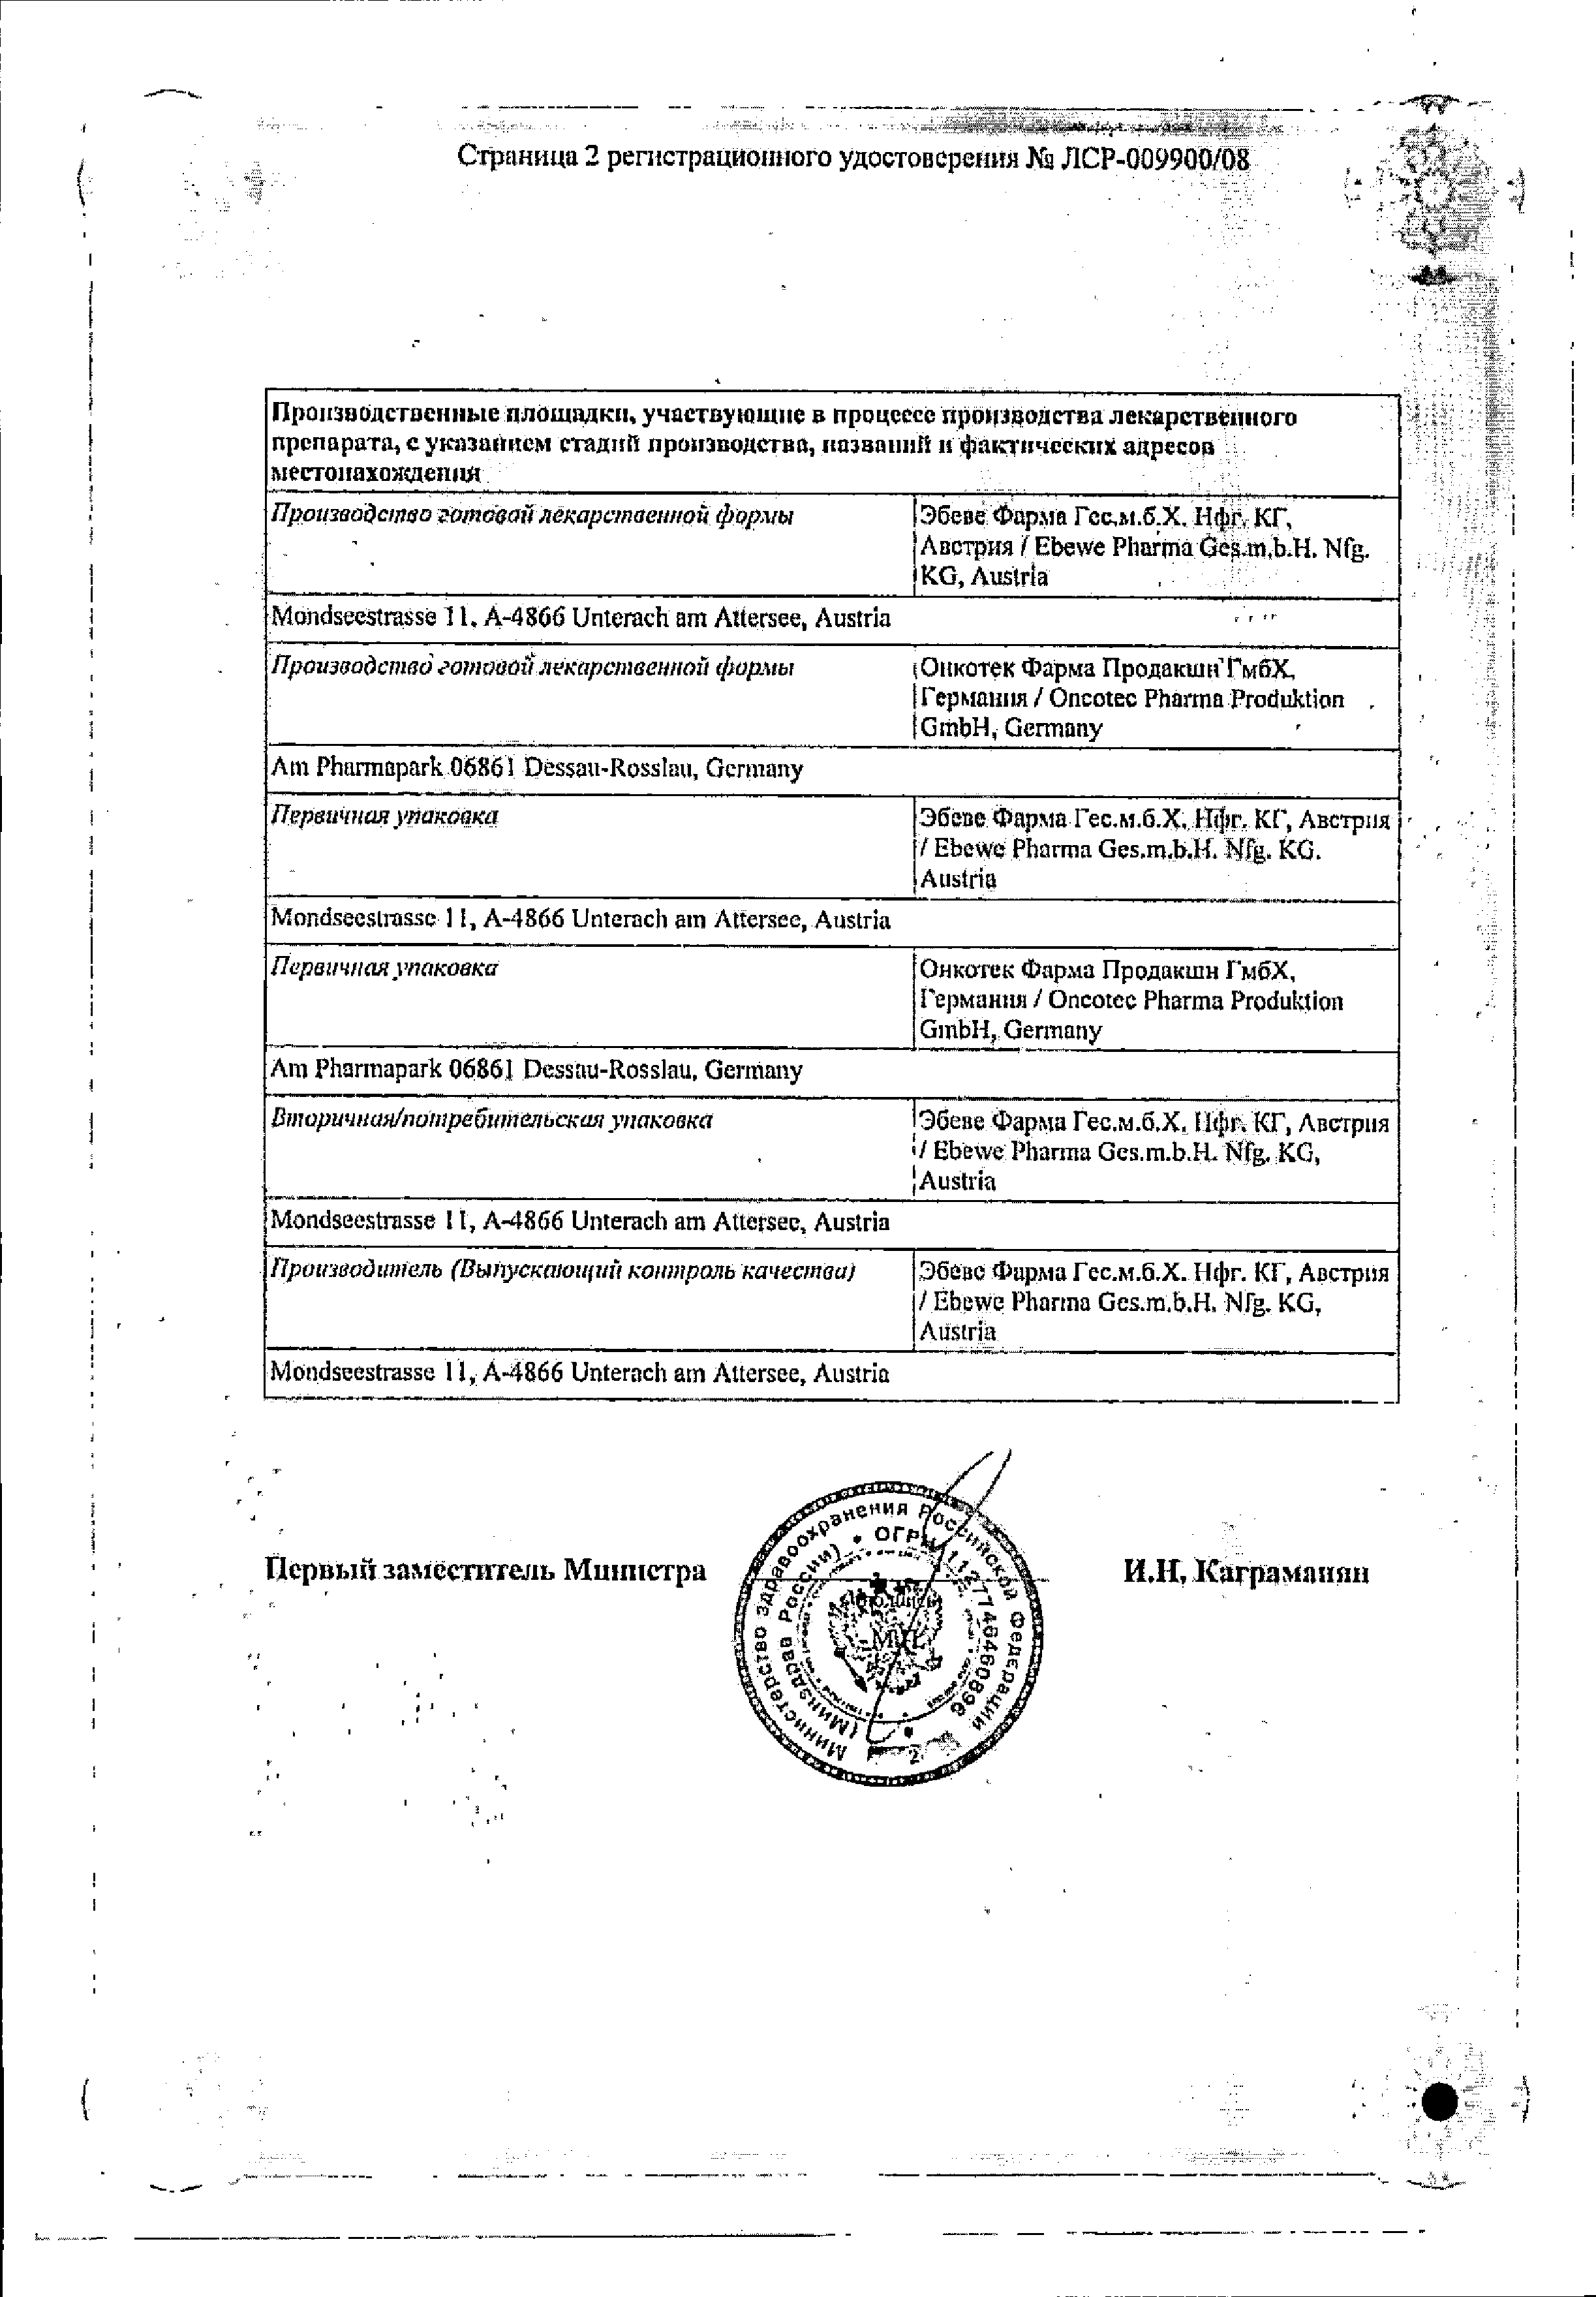 Оксалиплатин-Эбеве сертификат